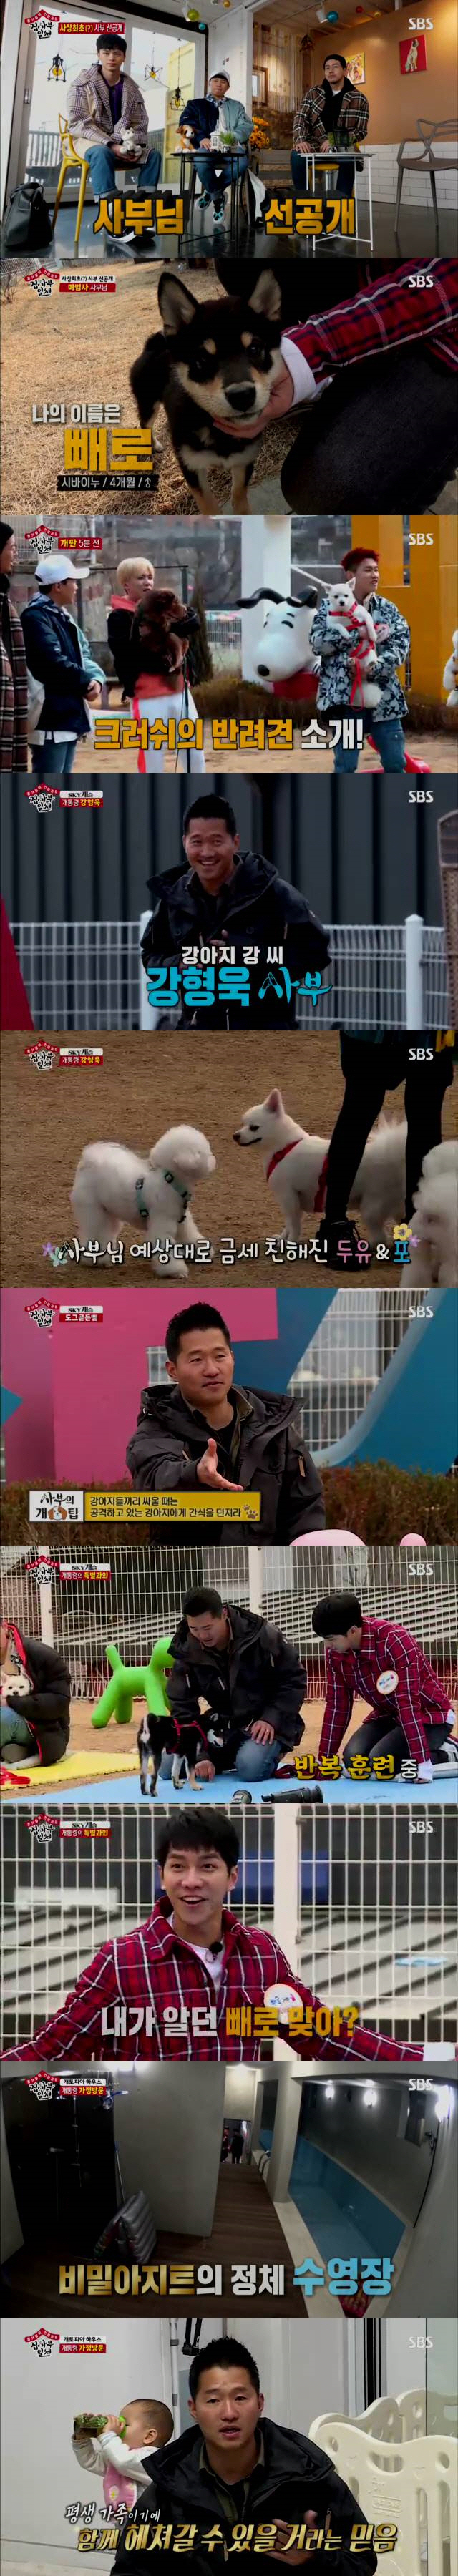 강형욱 '개토피아' 집 공개... 강아지 80마리 똥 먹은 이유는?